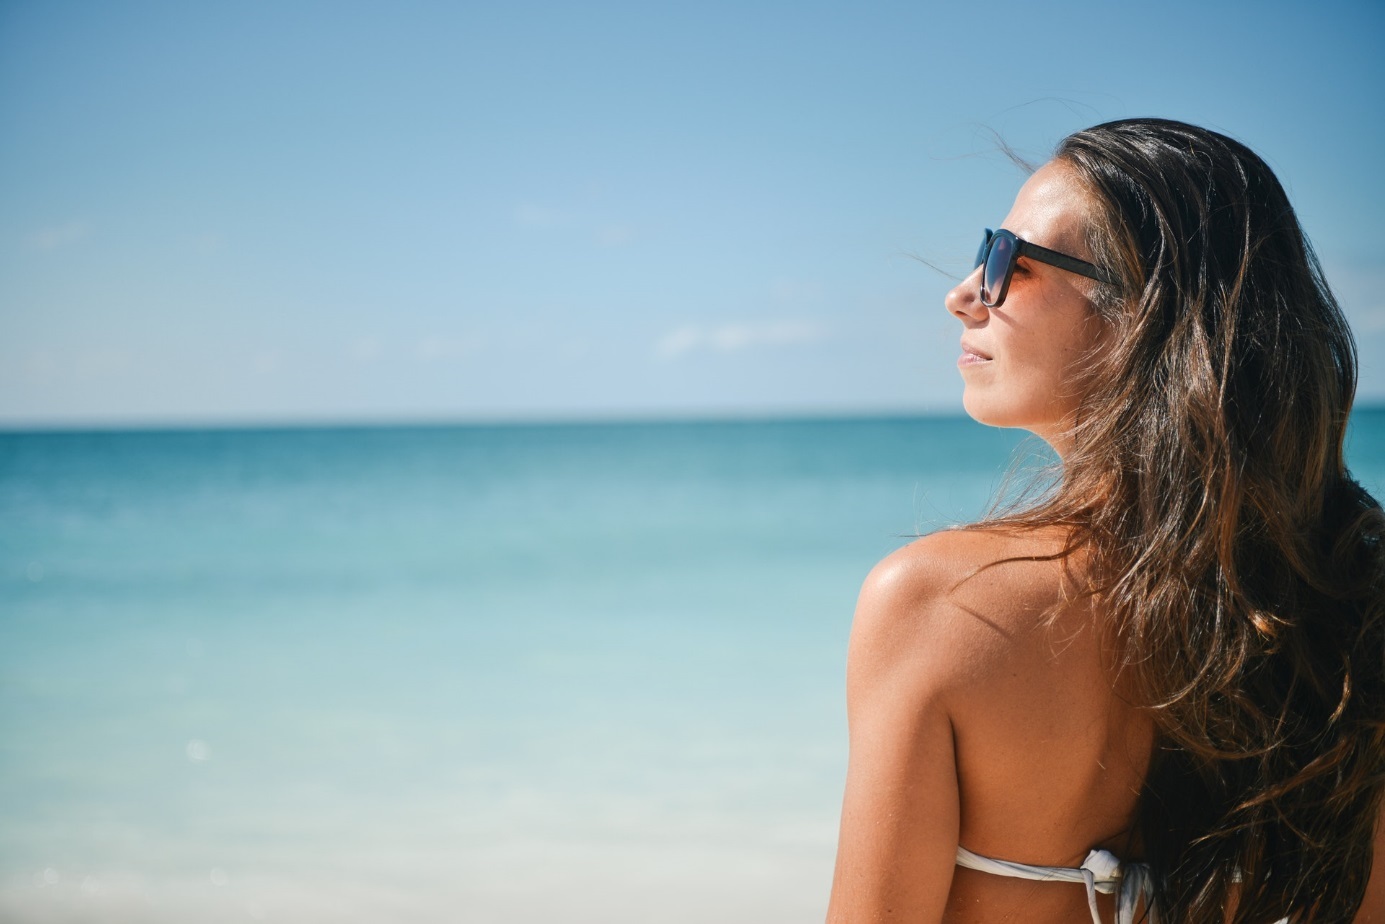 Frau mit Sonnenbrille am Meer unter blauem Himmel.